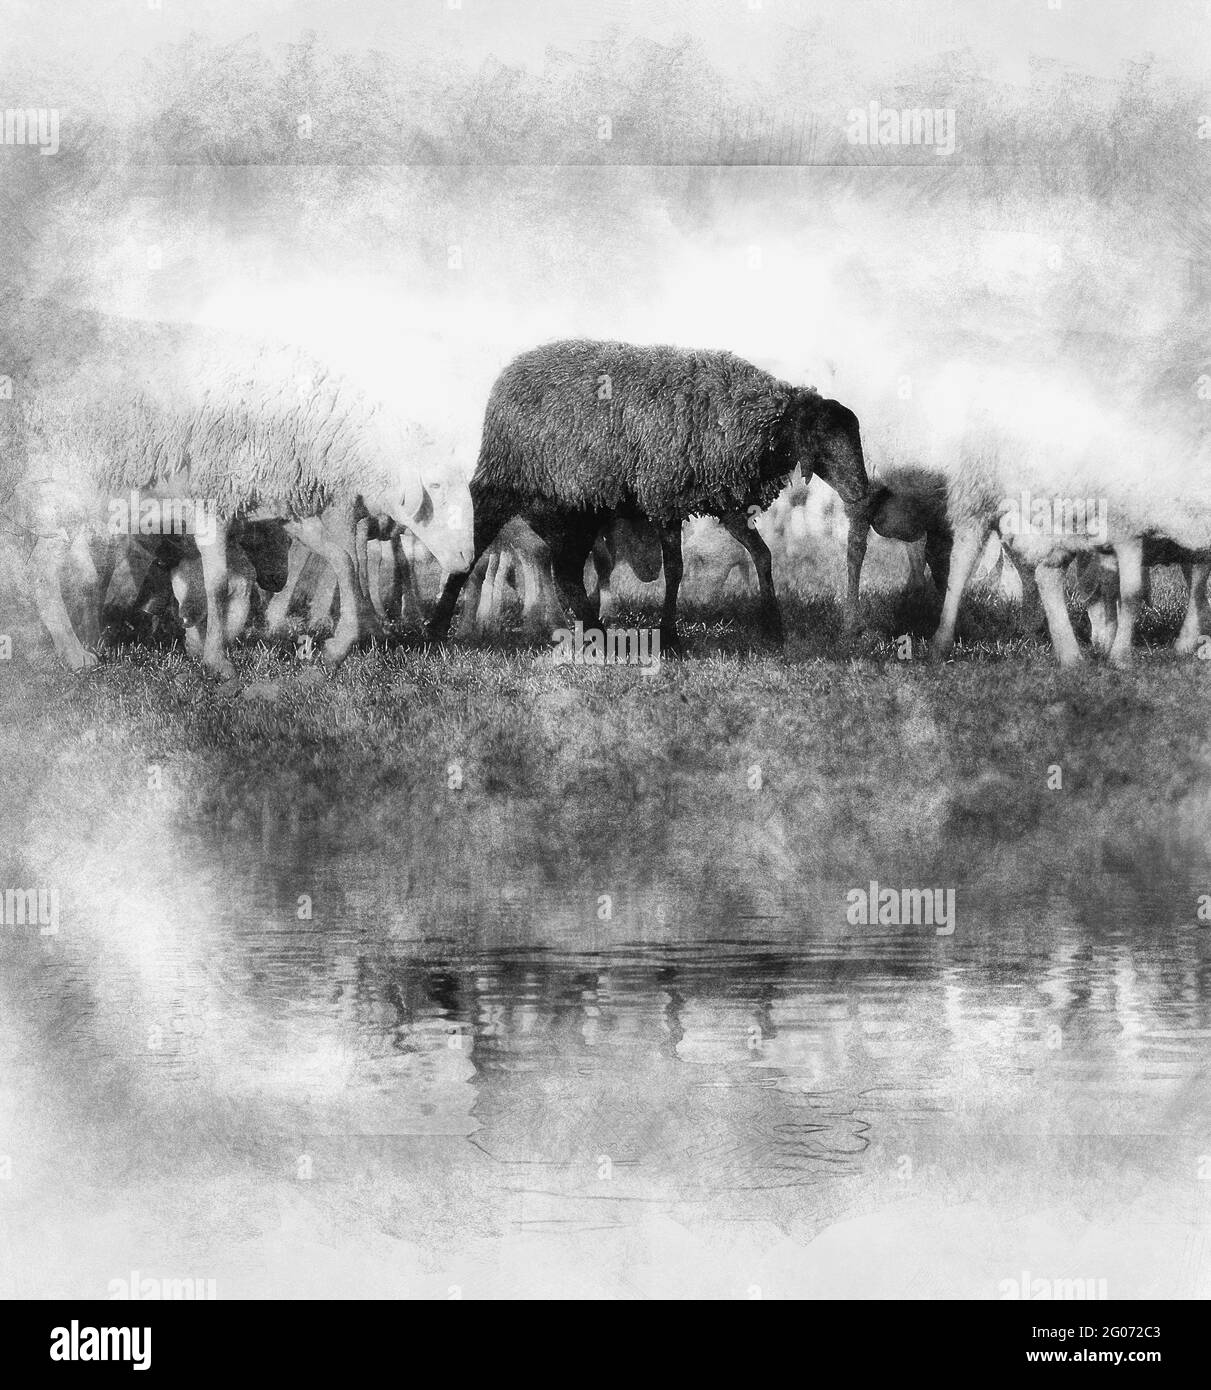 moutons dans un pré, moutons noirs dans l'eau dessin noir et blanc Banque D'Images